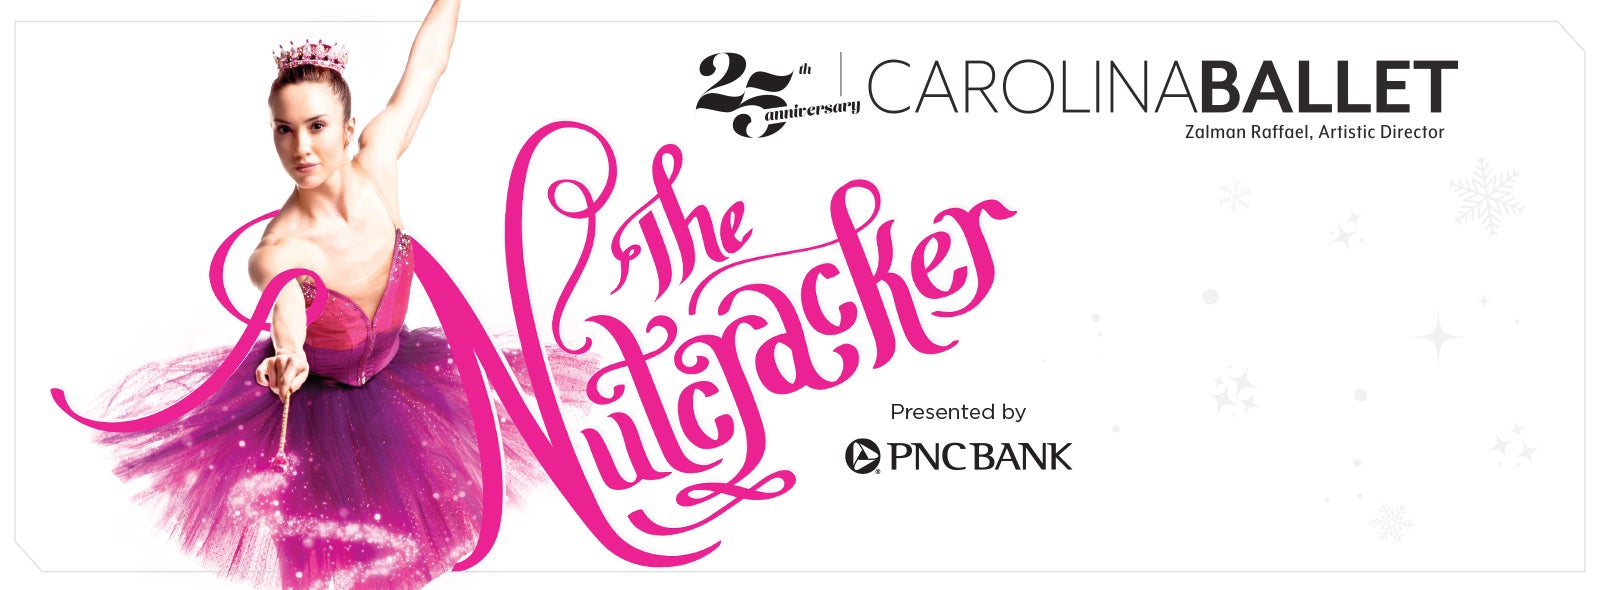 Carolina Ballet's The Nutcracker